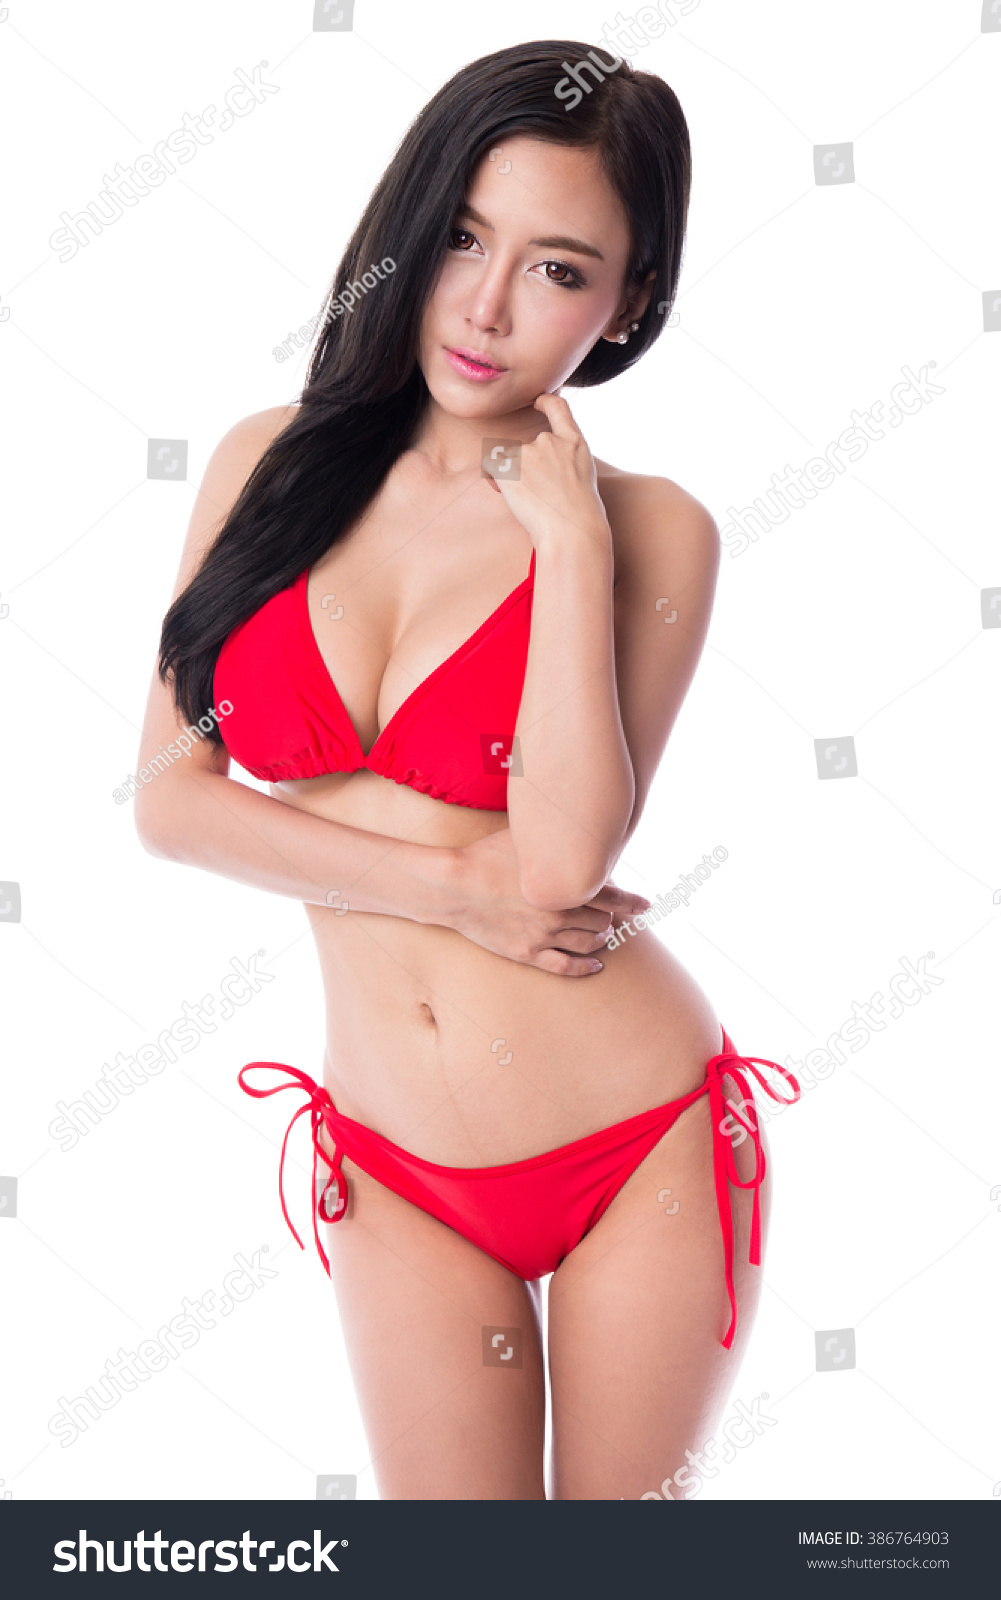 Red bikini erotic